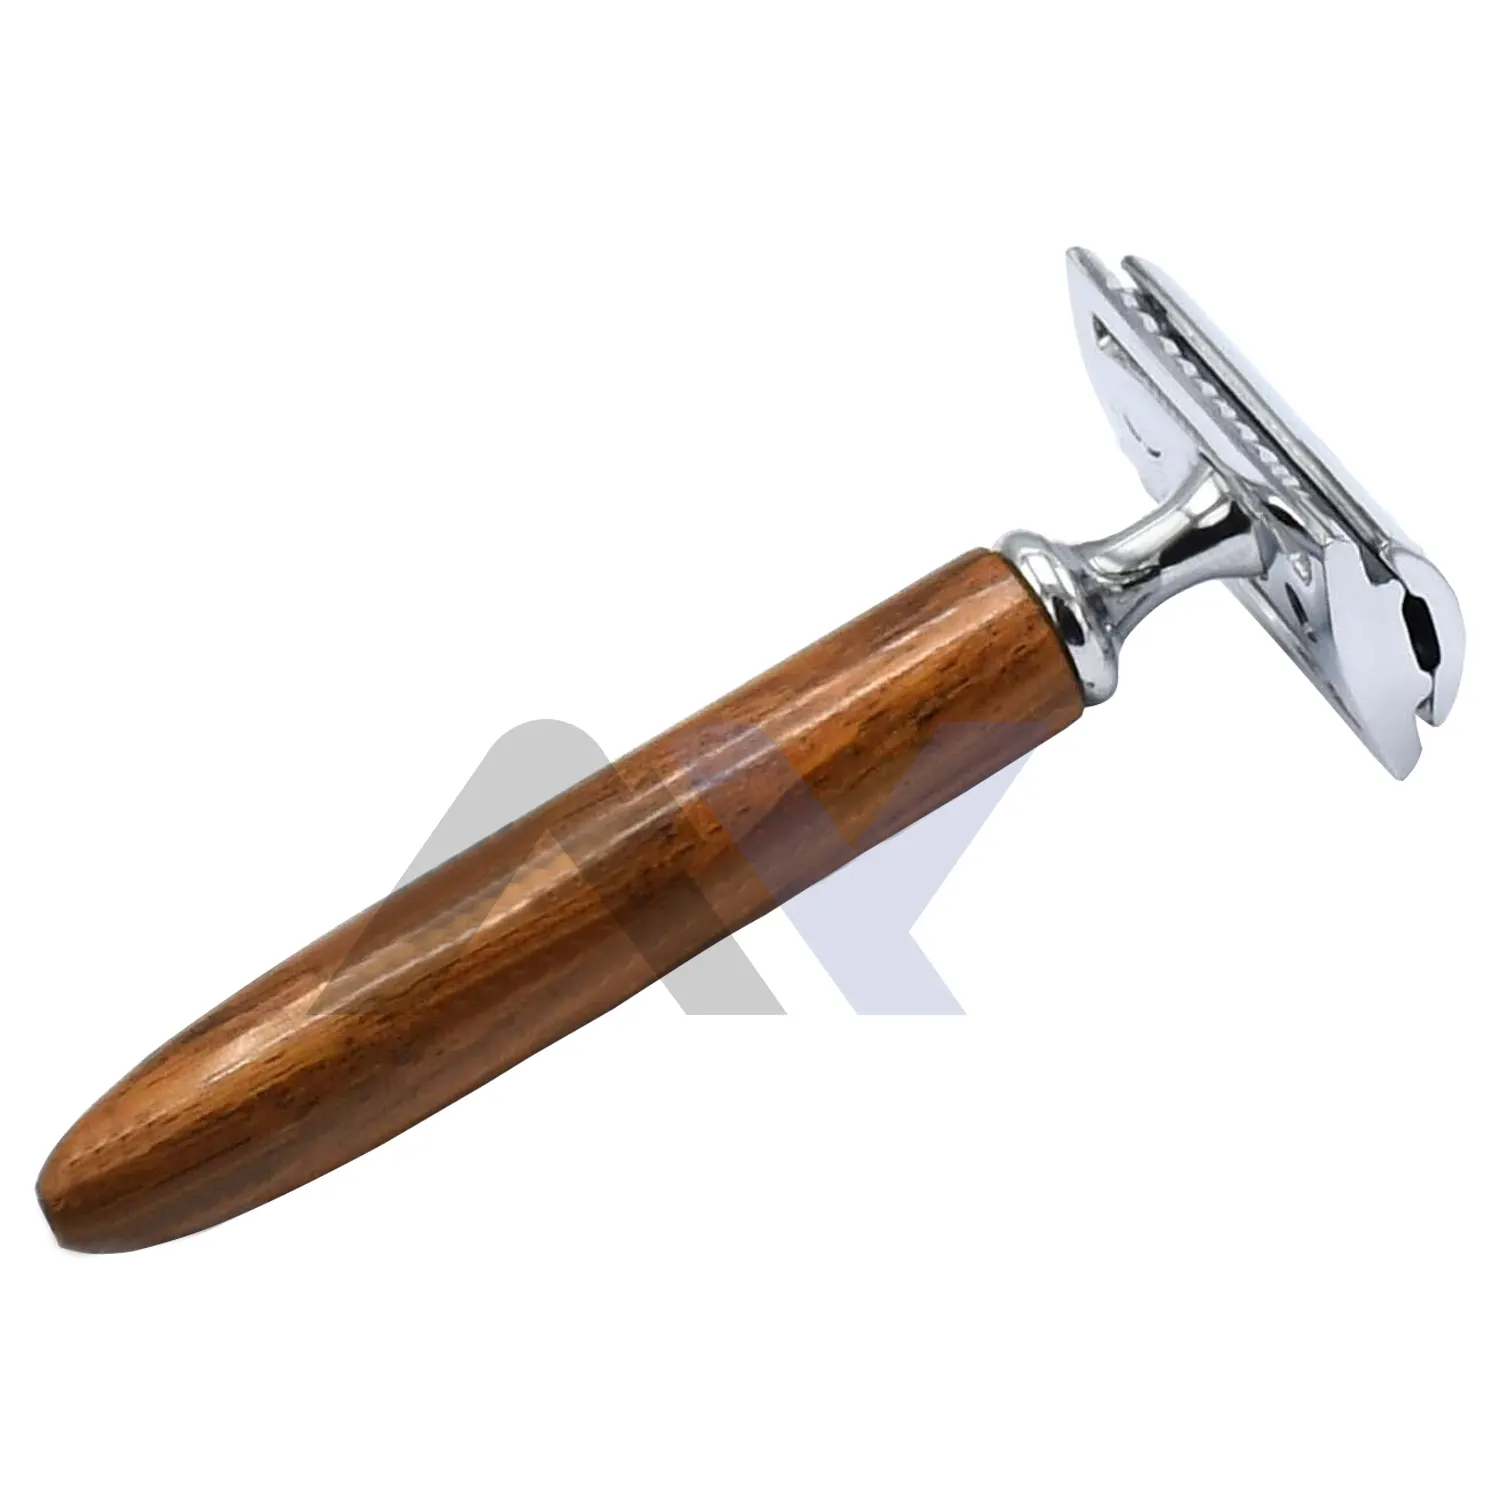 Pisau cukur keamanan gagang kayu klasik pisau cukur ujung ganda pencukur presisi tradisional-alat cukur kualitas Premium pria